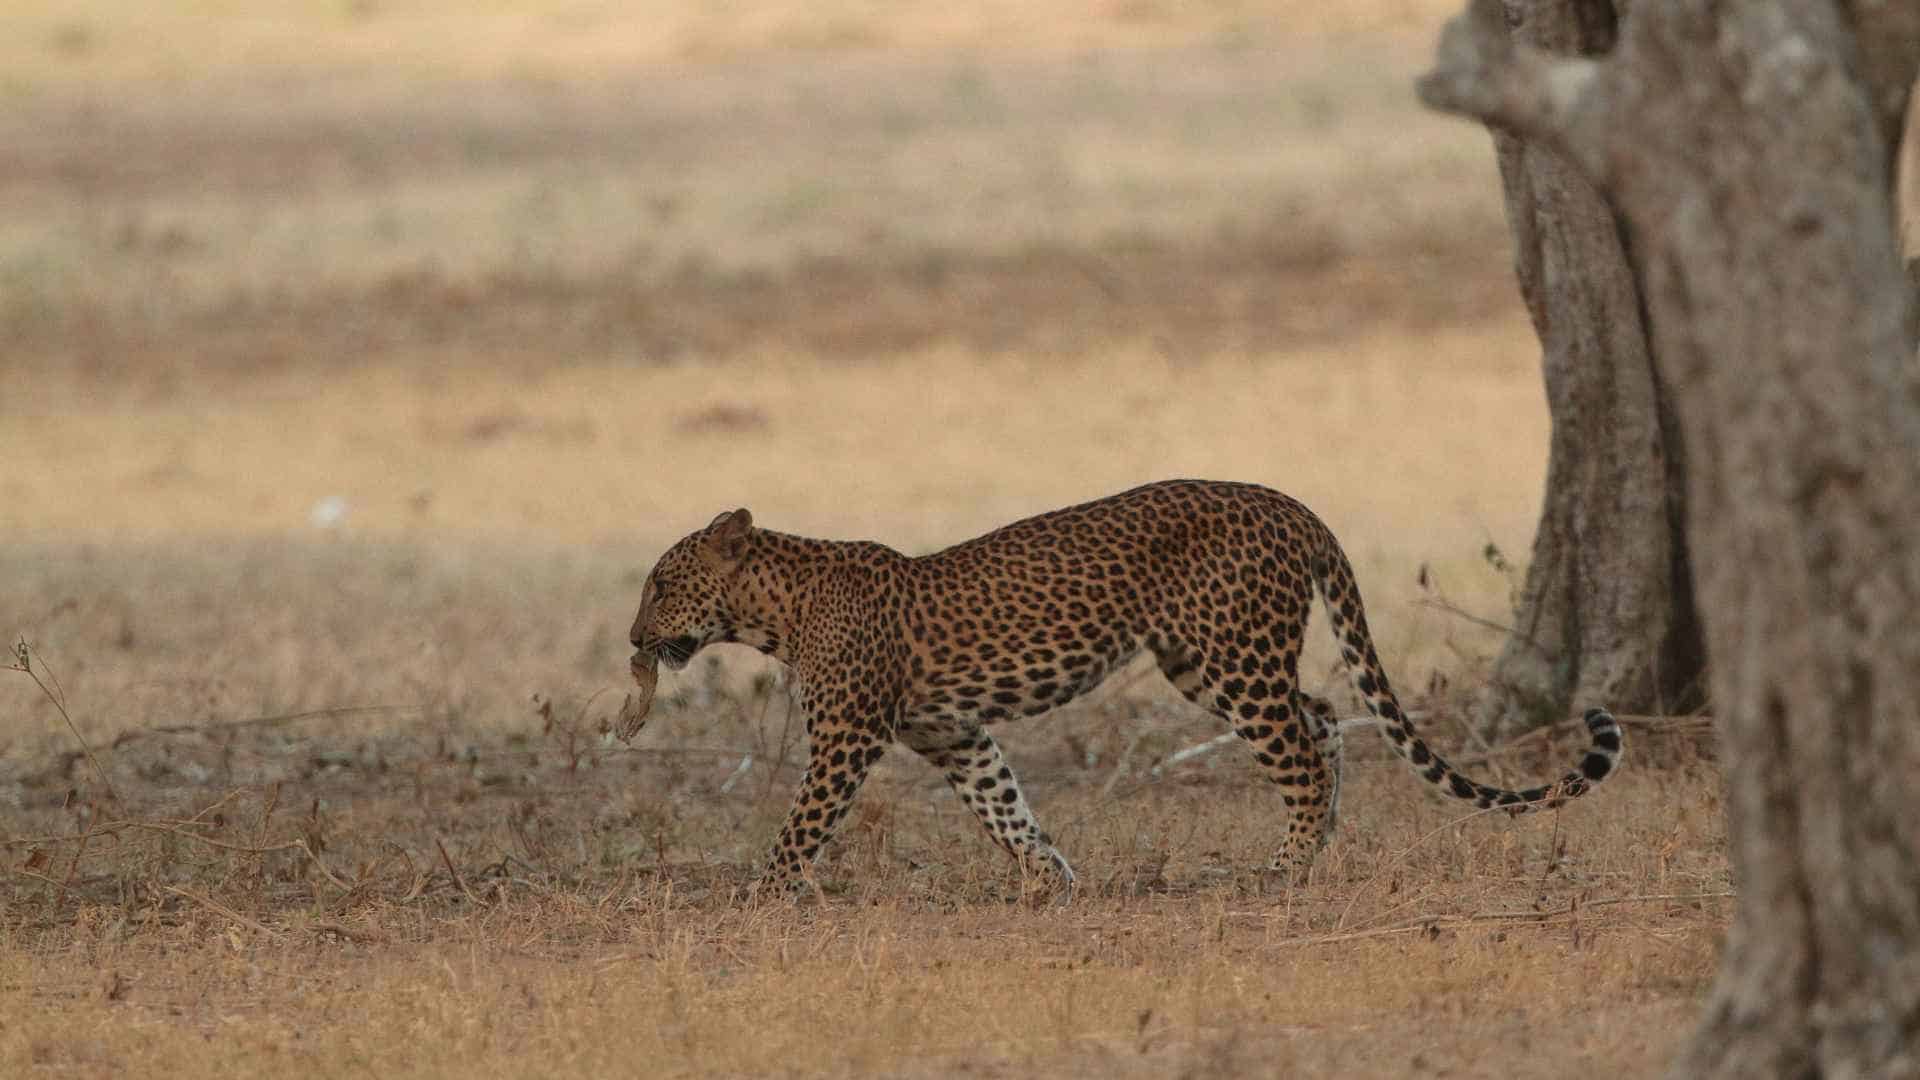 Leopard spotting at Wilpattu National Park, Sri Lanka